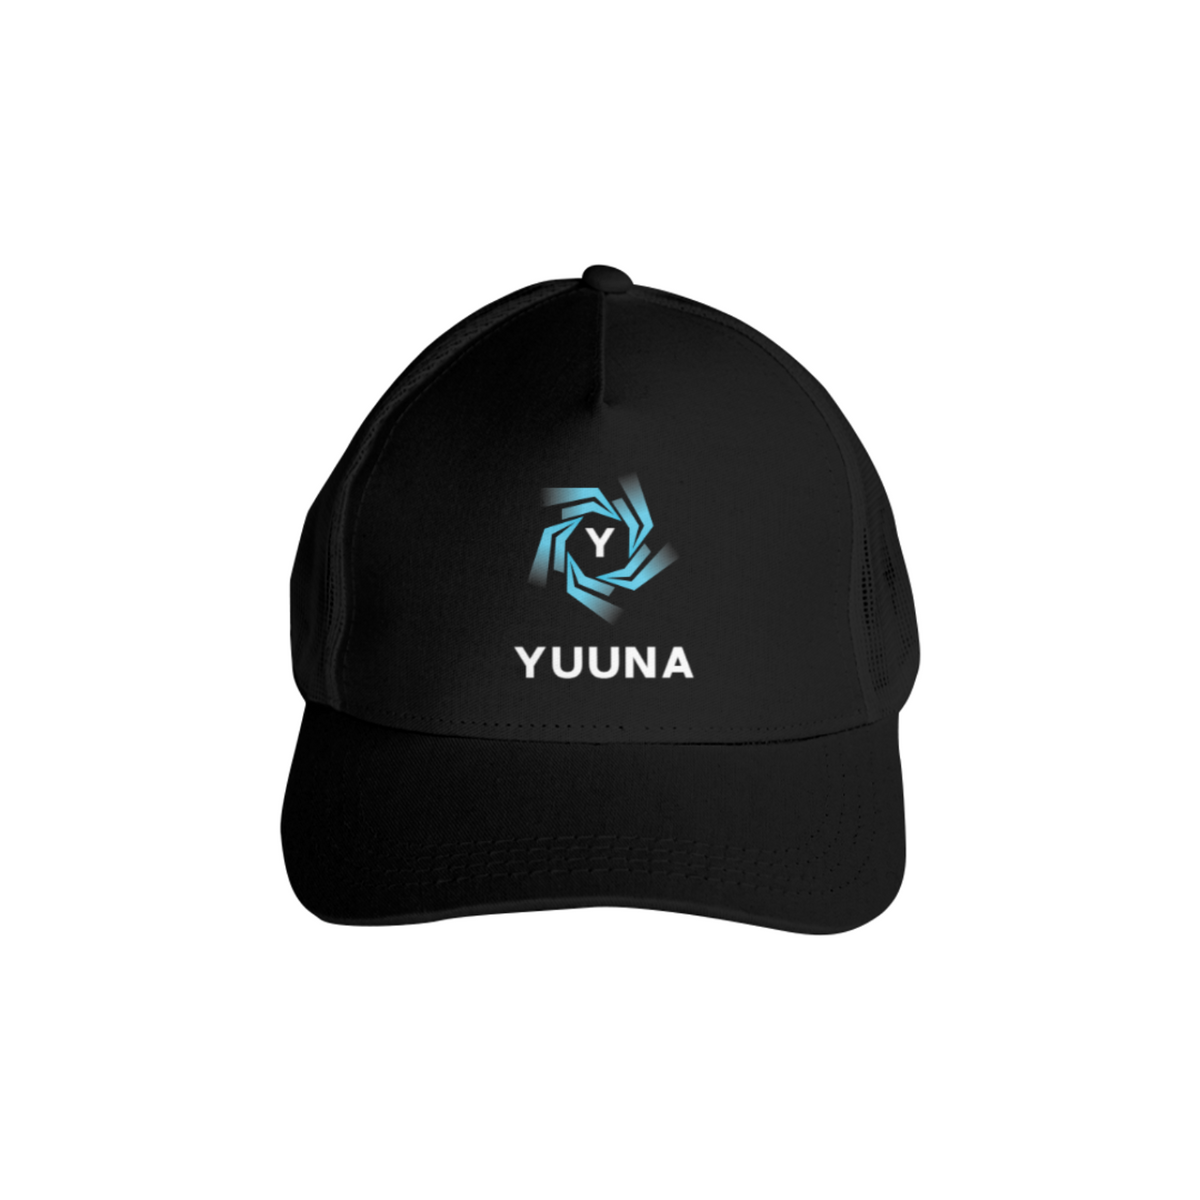 Nome do produto: YUUNA